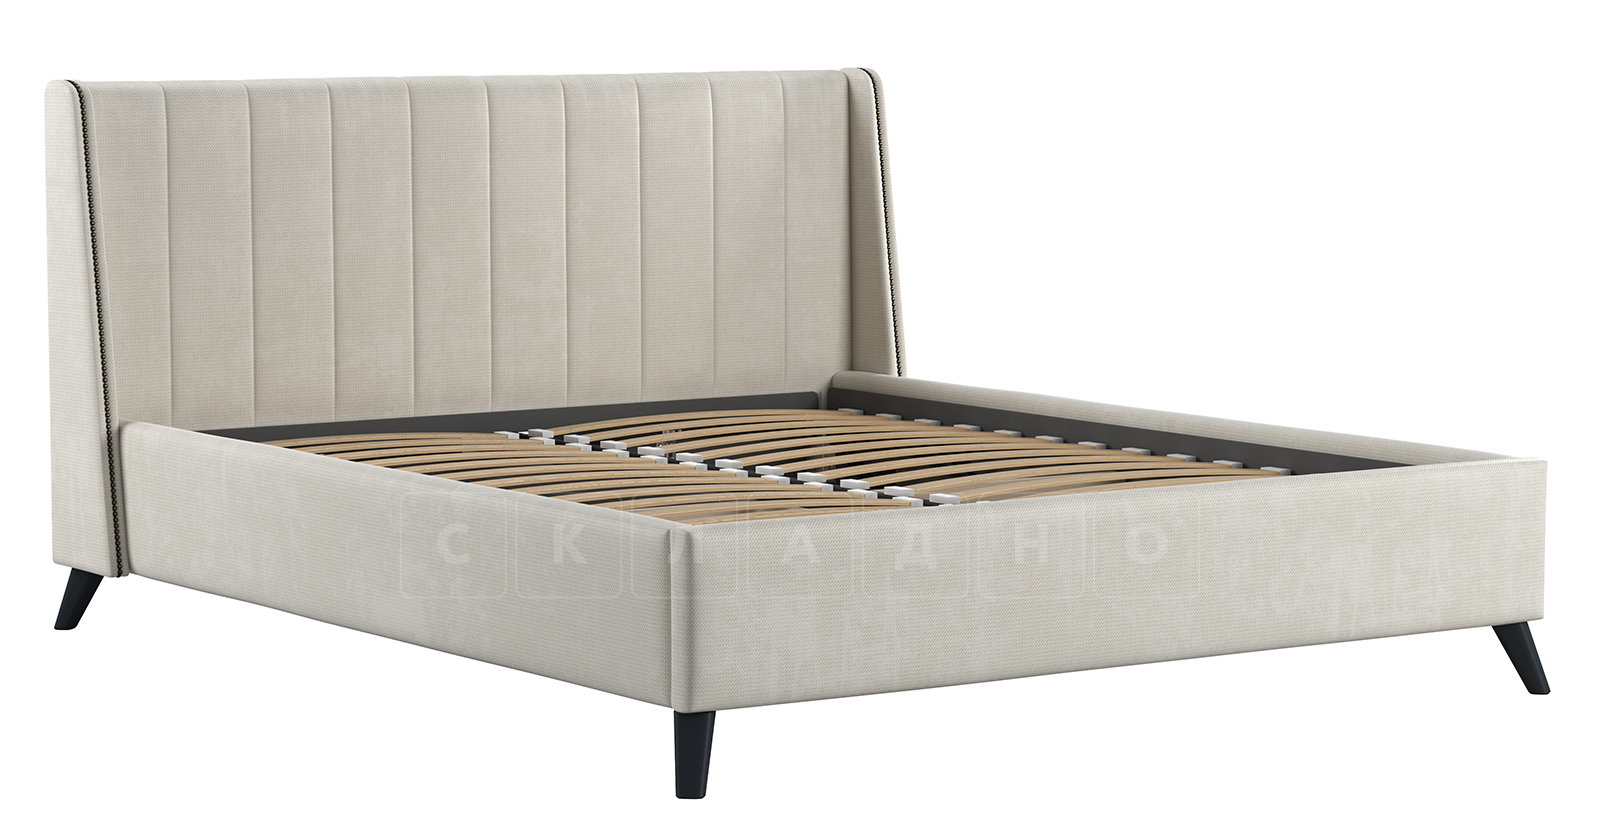 Мягкая кровать Мелисса 160 см велюр светло-бежевый фото 2 | интернет-магазин Складно